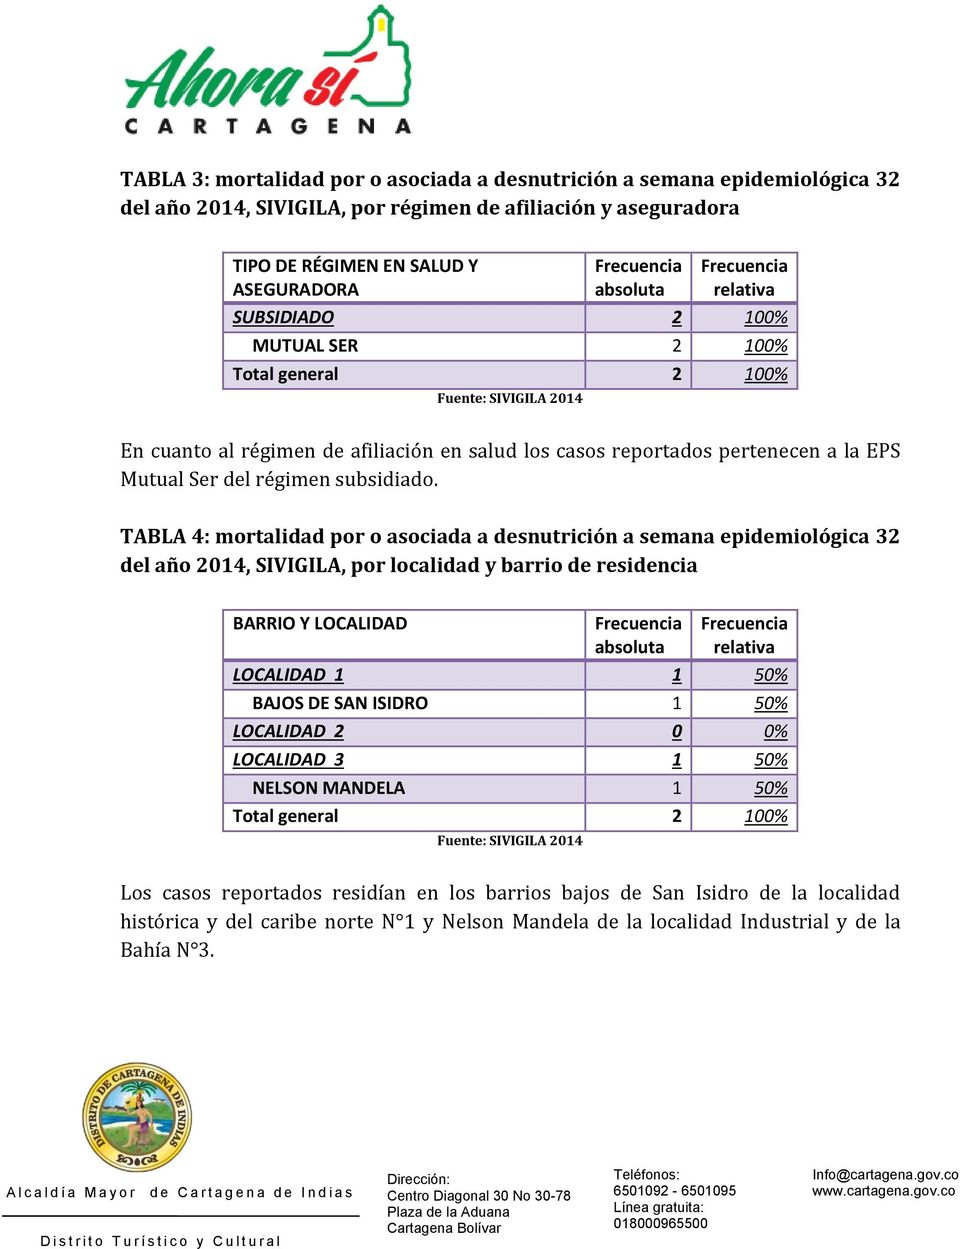 TABLA 4: mortalidad por o asociada a desnutrición a semana epidemiológica 32 del año 2014, SIVIGILA, por localidad y barrio de residencia BARRIO Y LOCALIDAD LOCALIDAD 1 1 50% BAJOS DE SAN